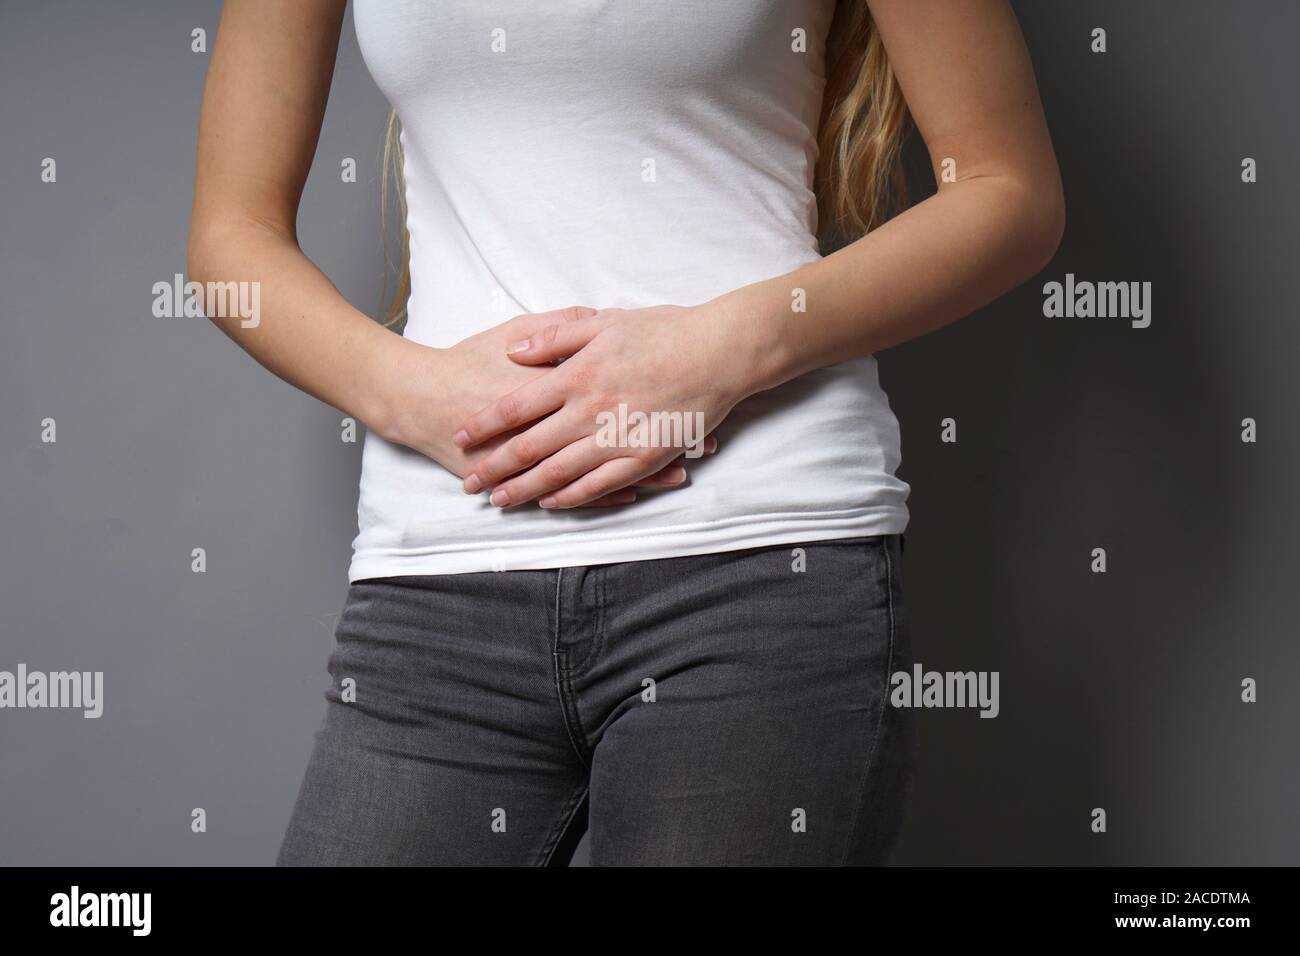 Méconnaissable Jeune femme tenant son ventre à deux mains - concept pour la dysménorrhée, douleur abdominale, syndrome du côlon irritable, le ventre ou d'estomac, les périodes douloureuses ou les crampes menstruelles Banque D'Images